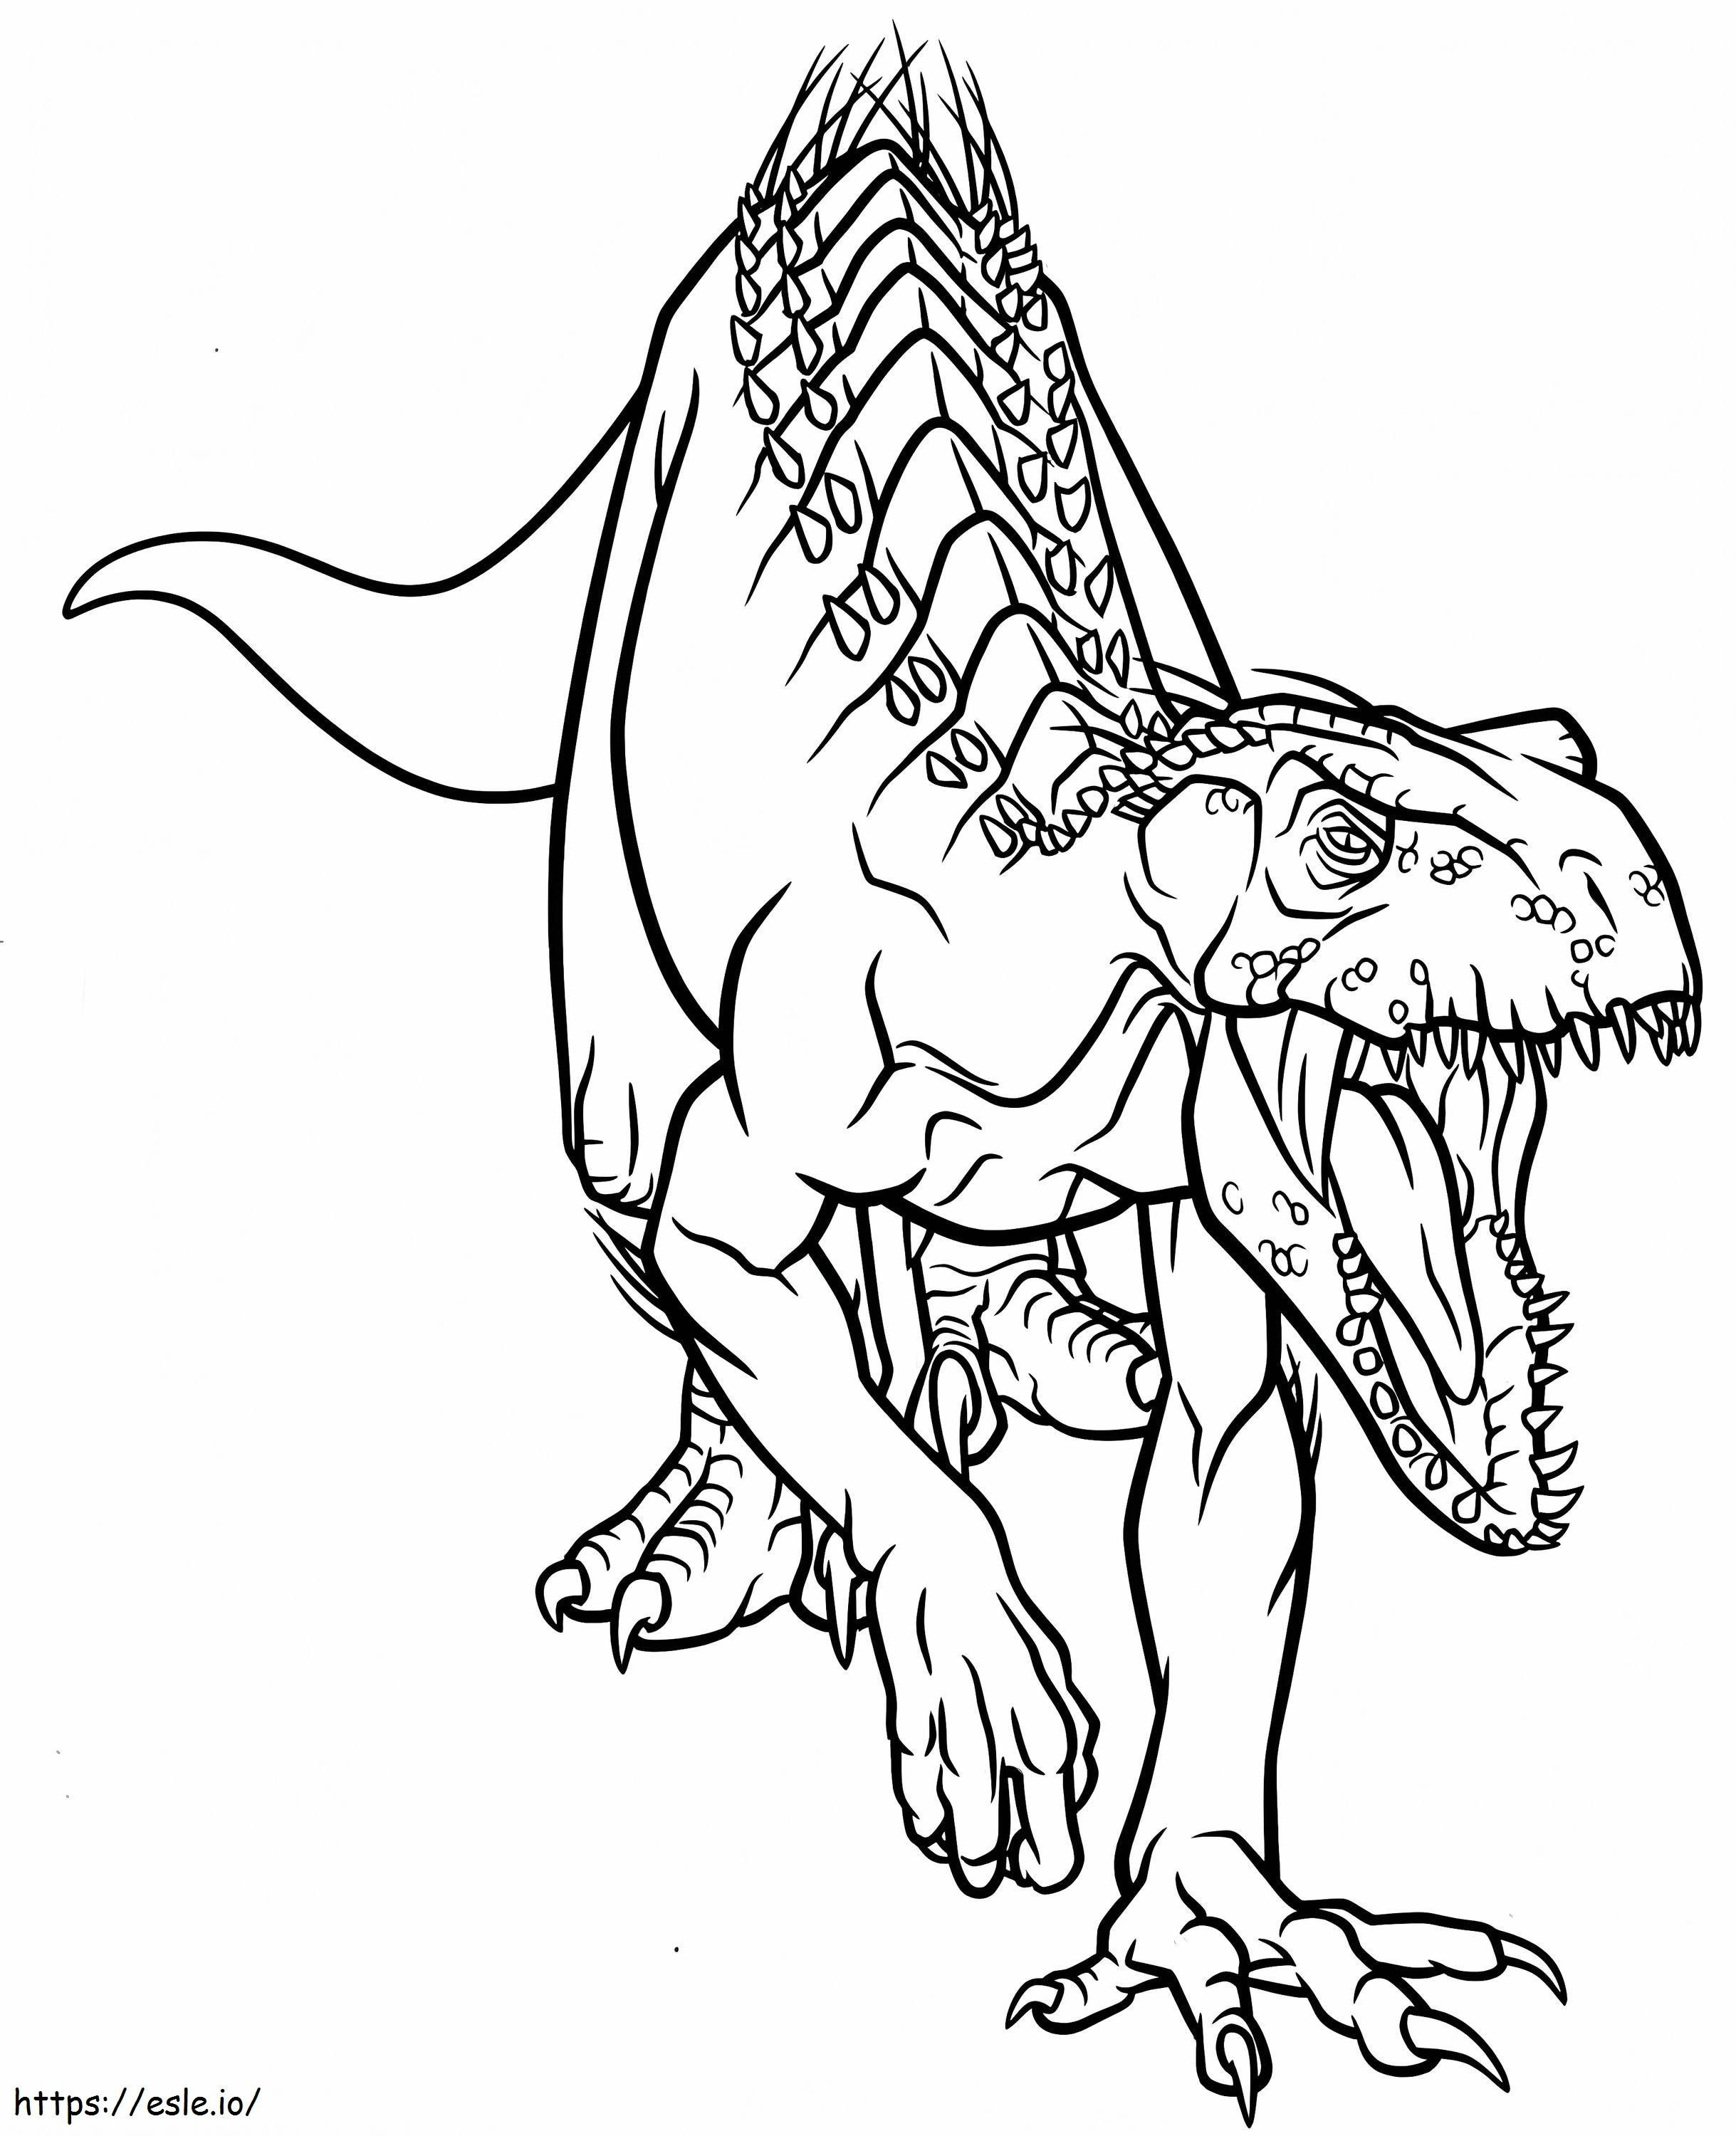 Wściekły Indoraptor kolorowanka